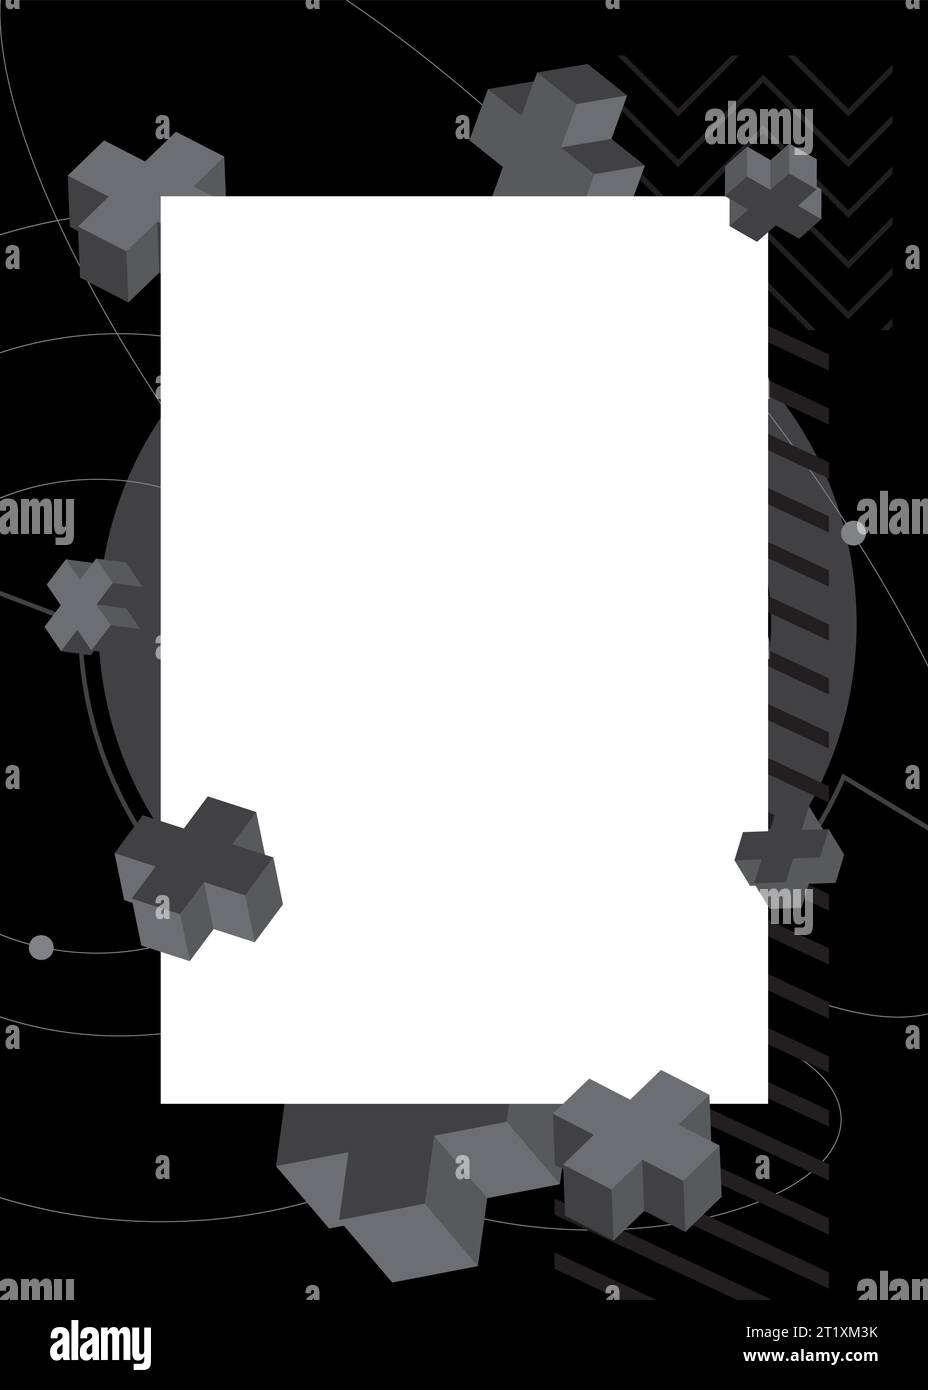 Schwarzer Hintergrund mit geometrischer Grafik im Retro-Design mit Textstelle. Rahmen für minimale geometrische Elemente. Vintage abstrakte Formen Vektor Illustration für Stock Vektor